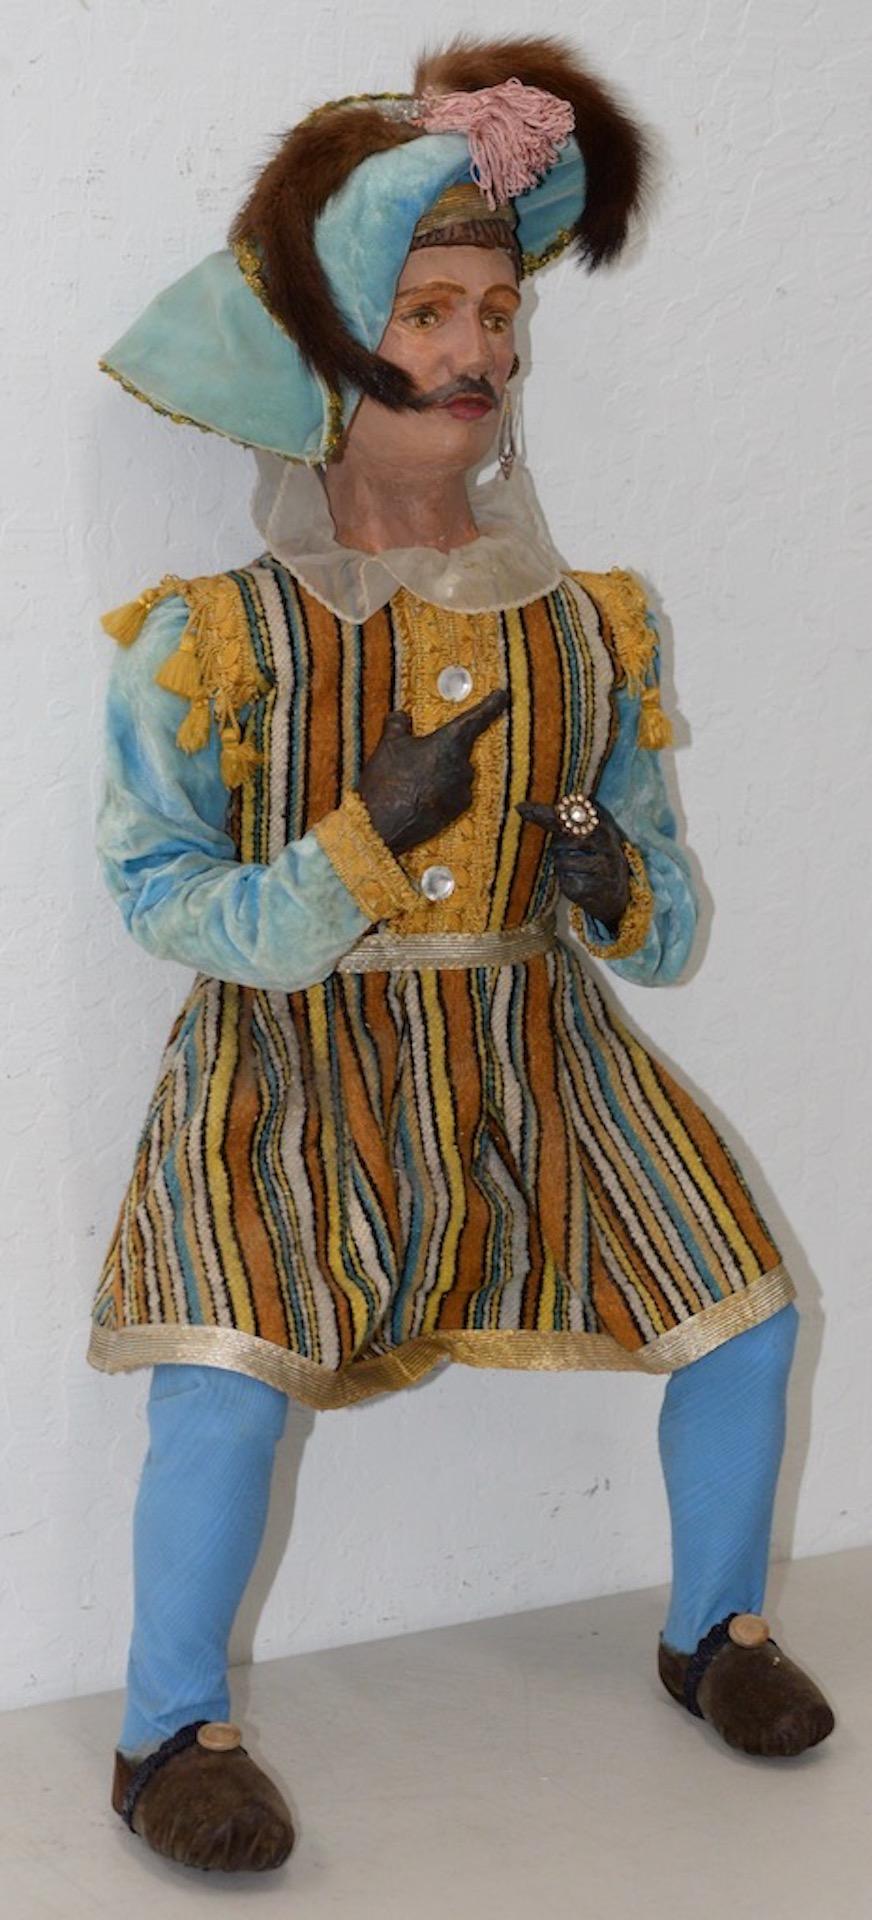 Poupée Mousquetaire de Noël, circa 1940s-1950s

Peint à la main. Vêtements faits à la main. Très belle poupée vintage. On ne sait pas si c'est du bois ou du papier mâché.

Dimensions : 13